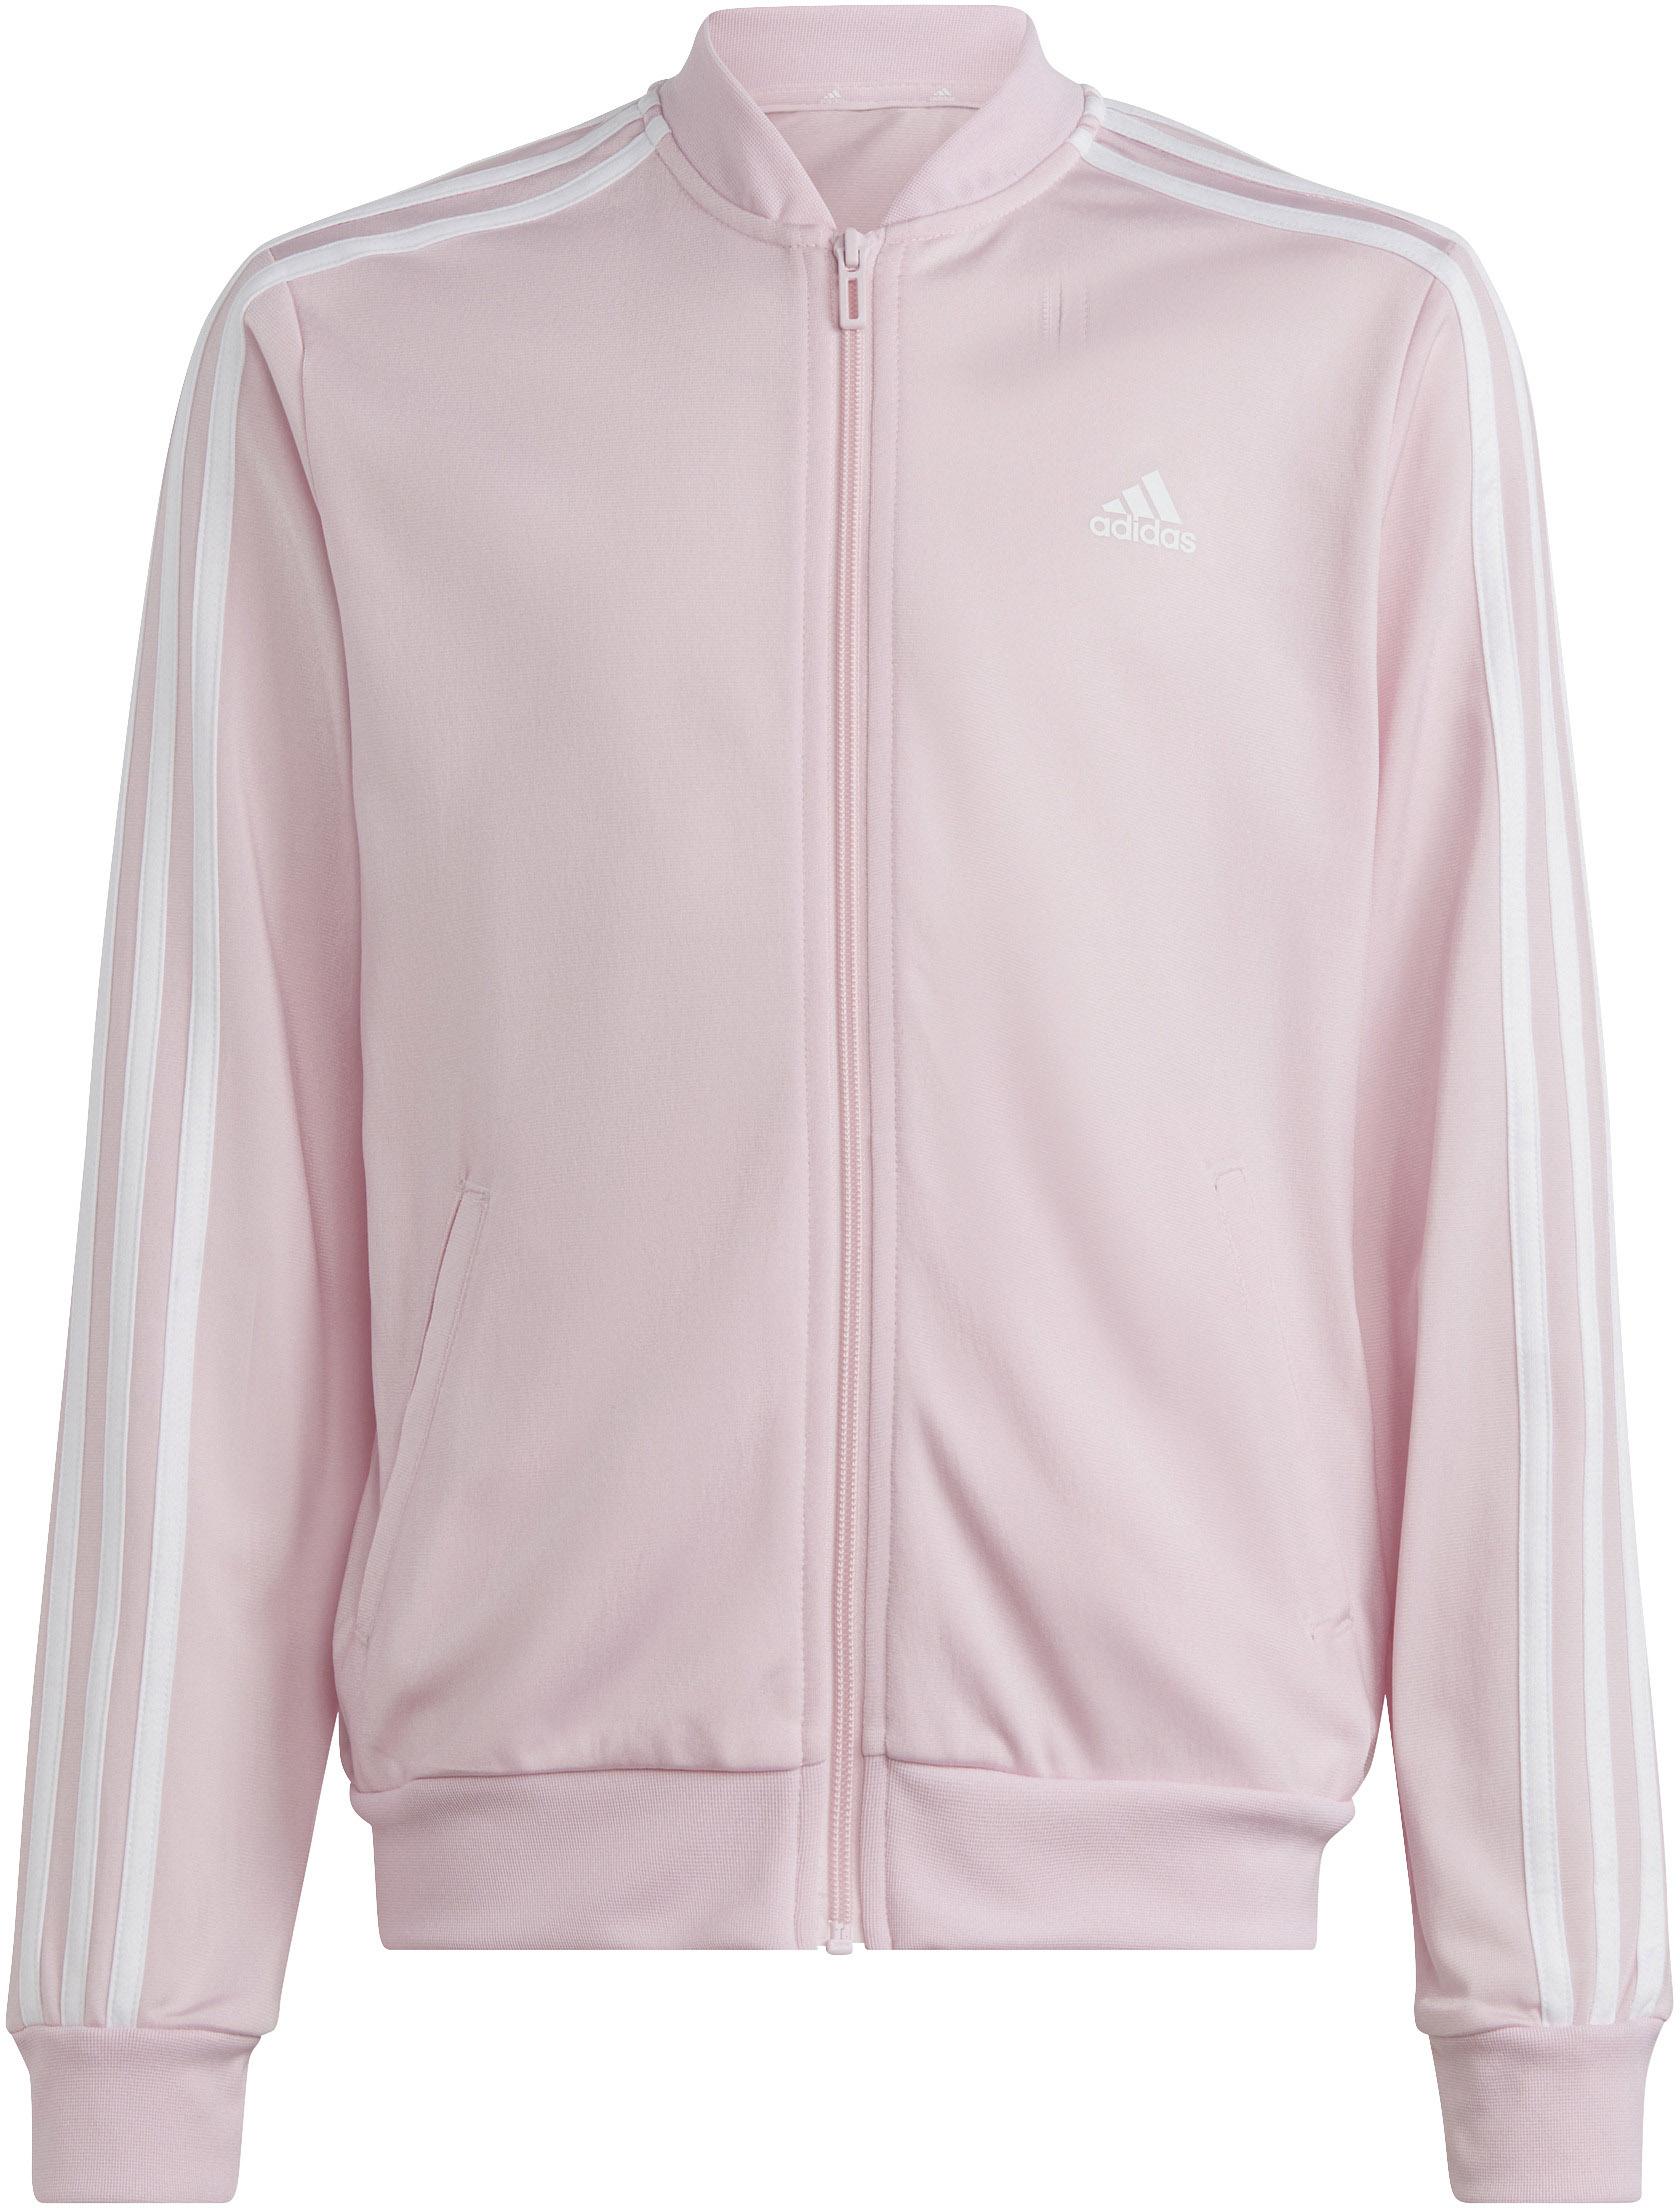 Adidas Trainingsanzug von Shop clear kaufen SportScheck fuchsia-white lucid Mädchen Online im pink-semi